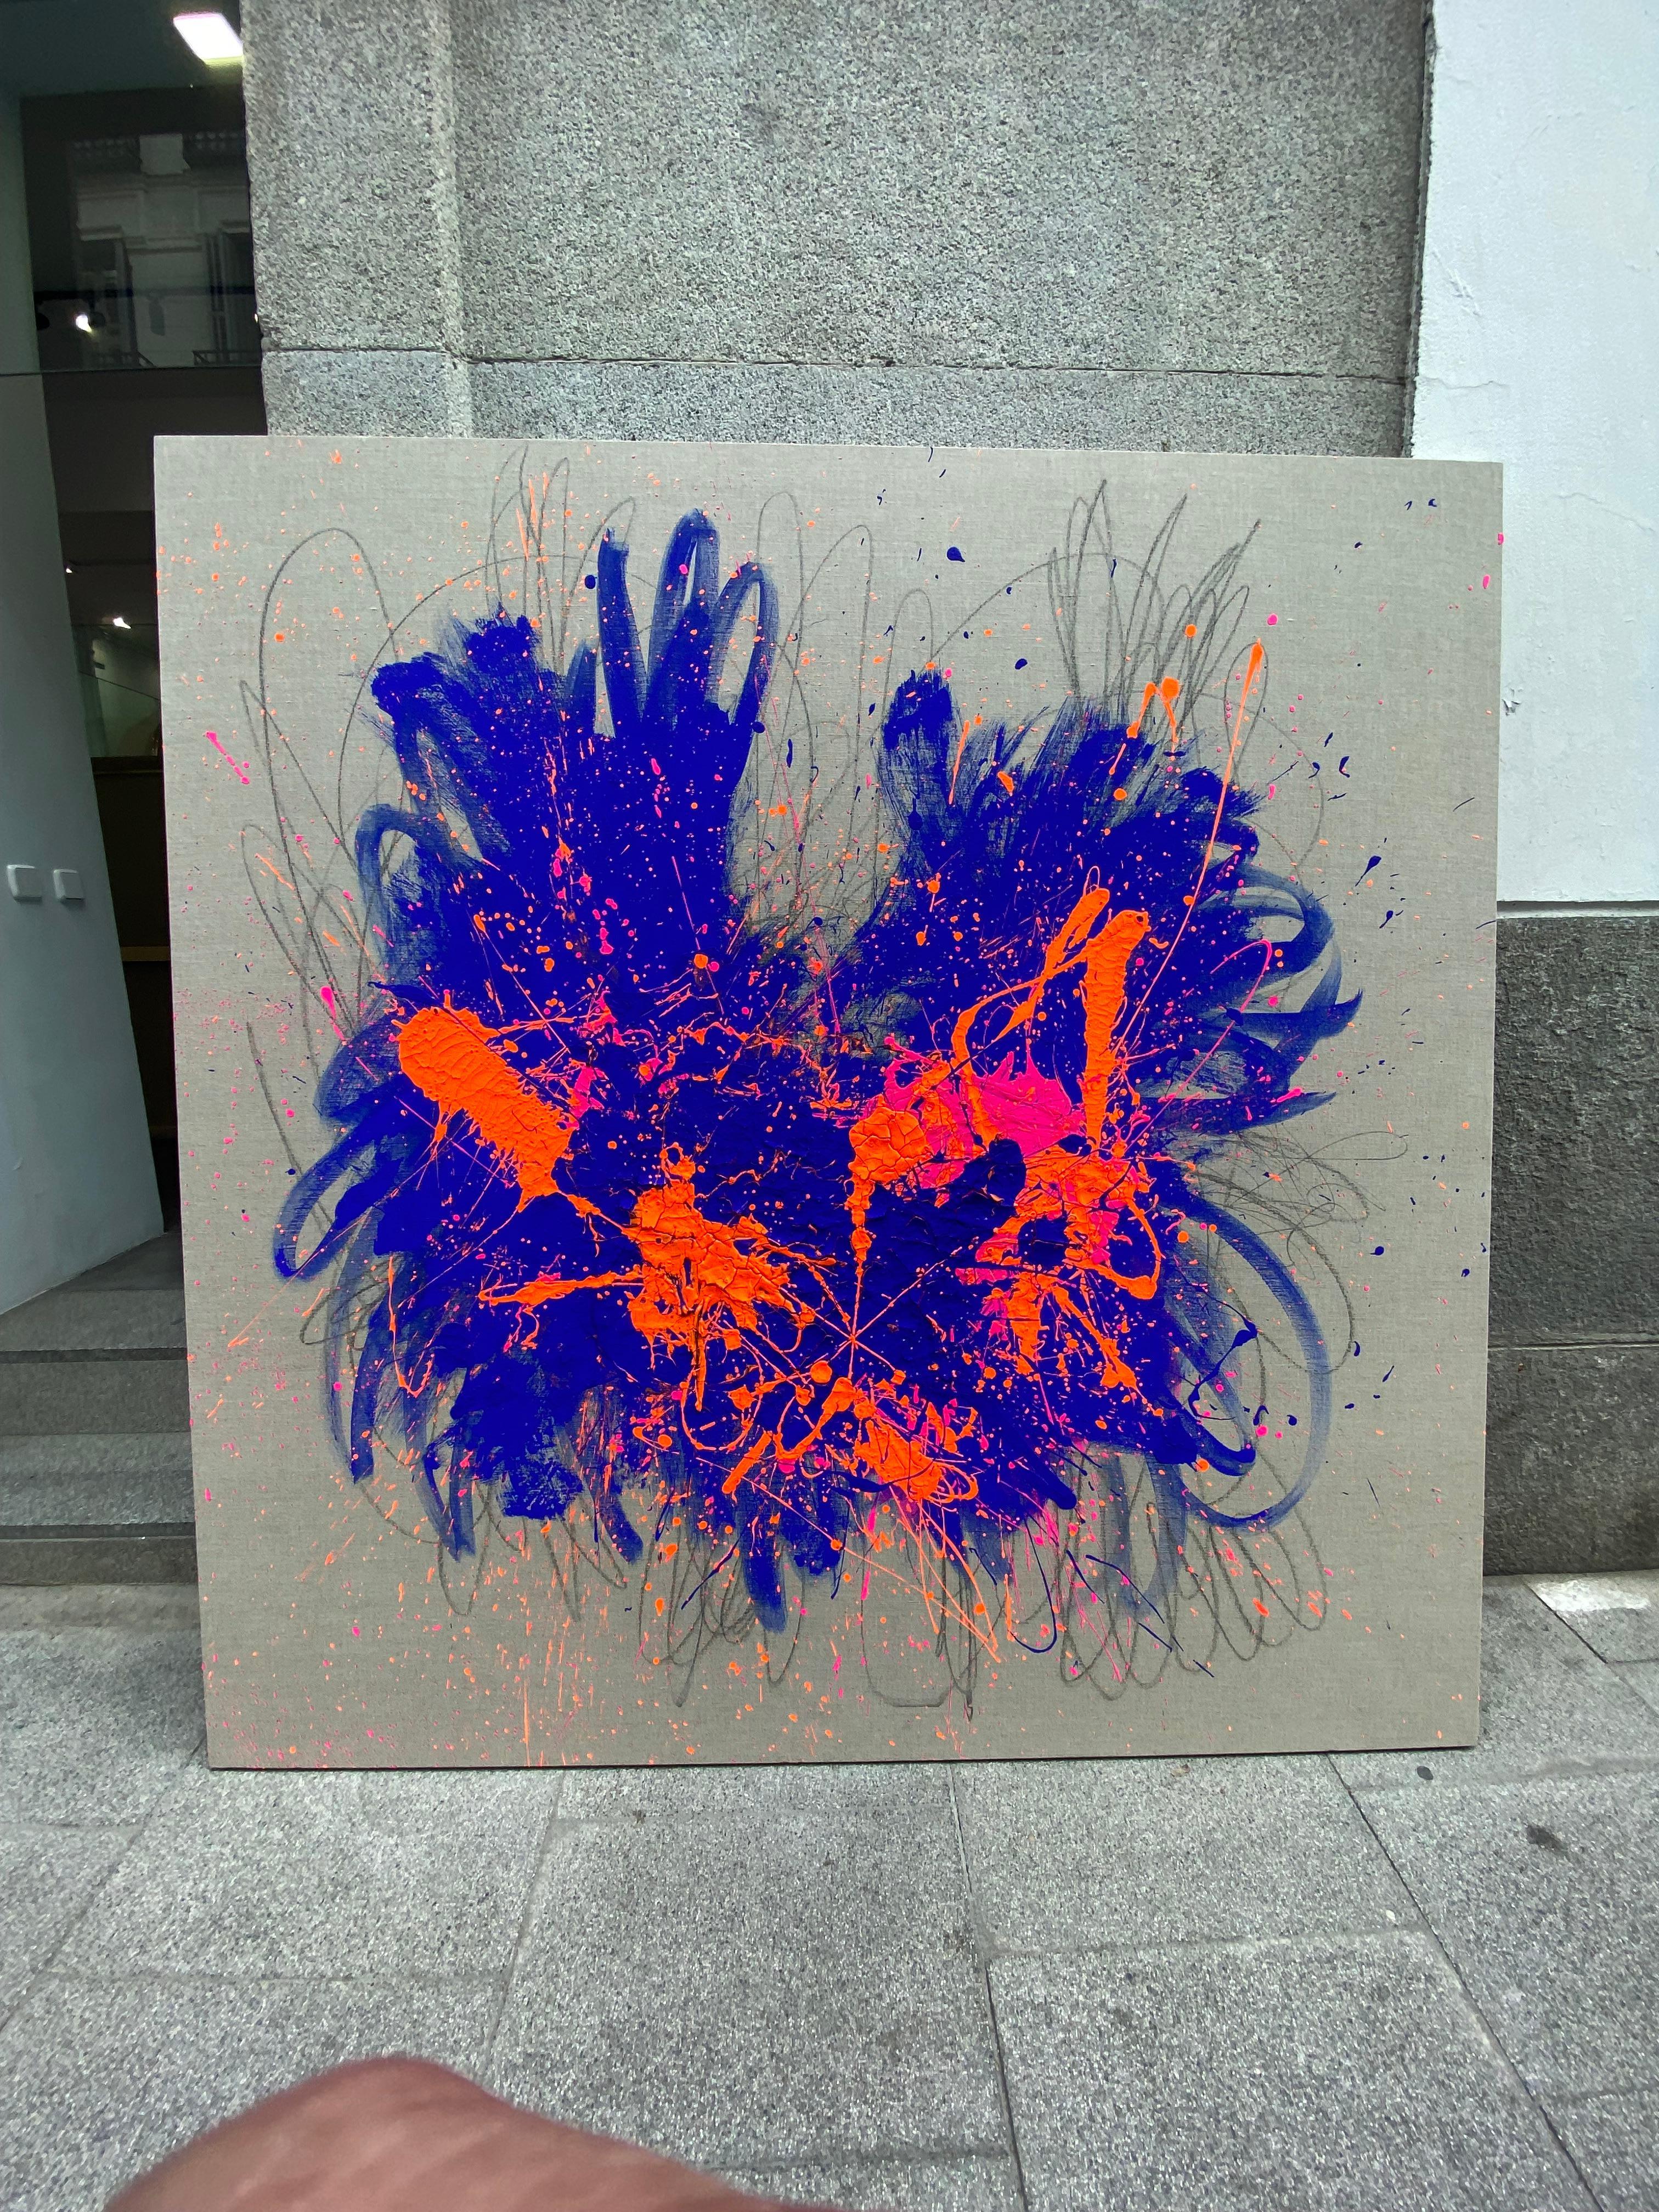 Big bang Abstract 1 - Painting by Carlos Mercado